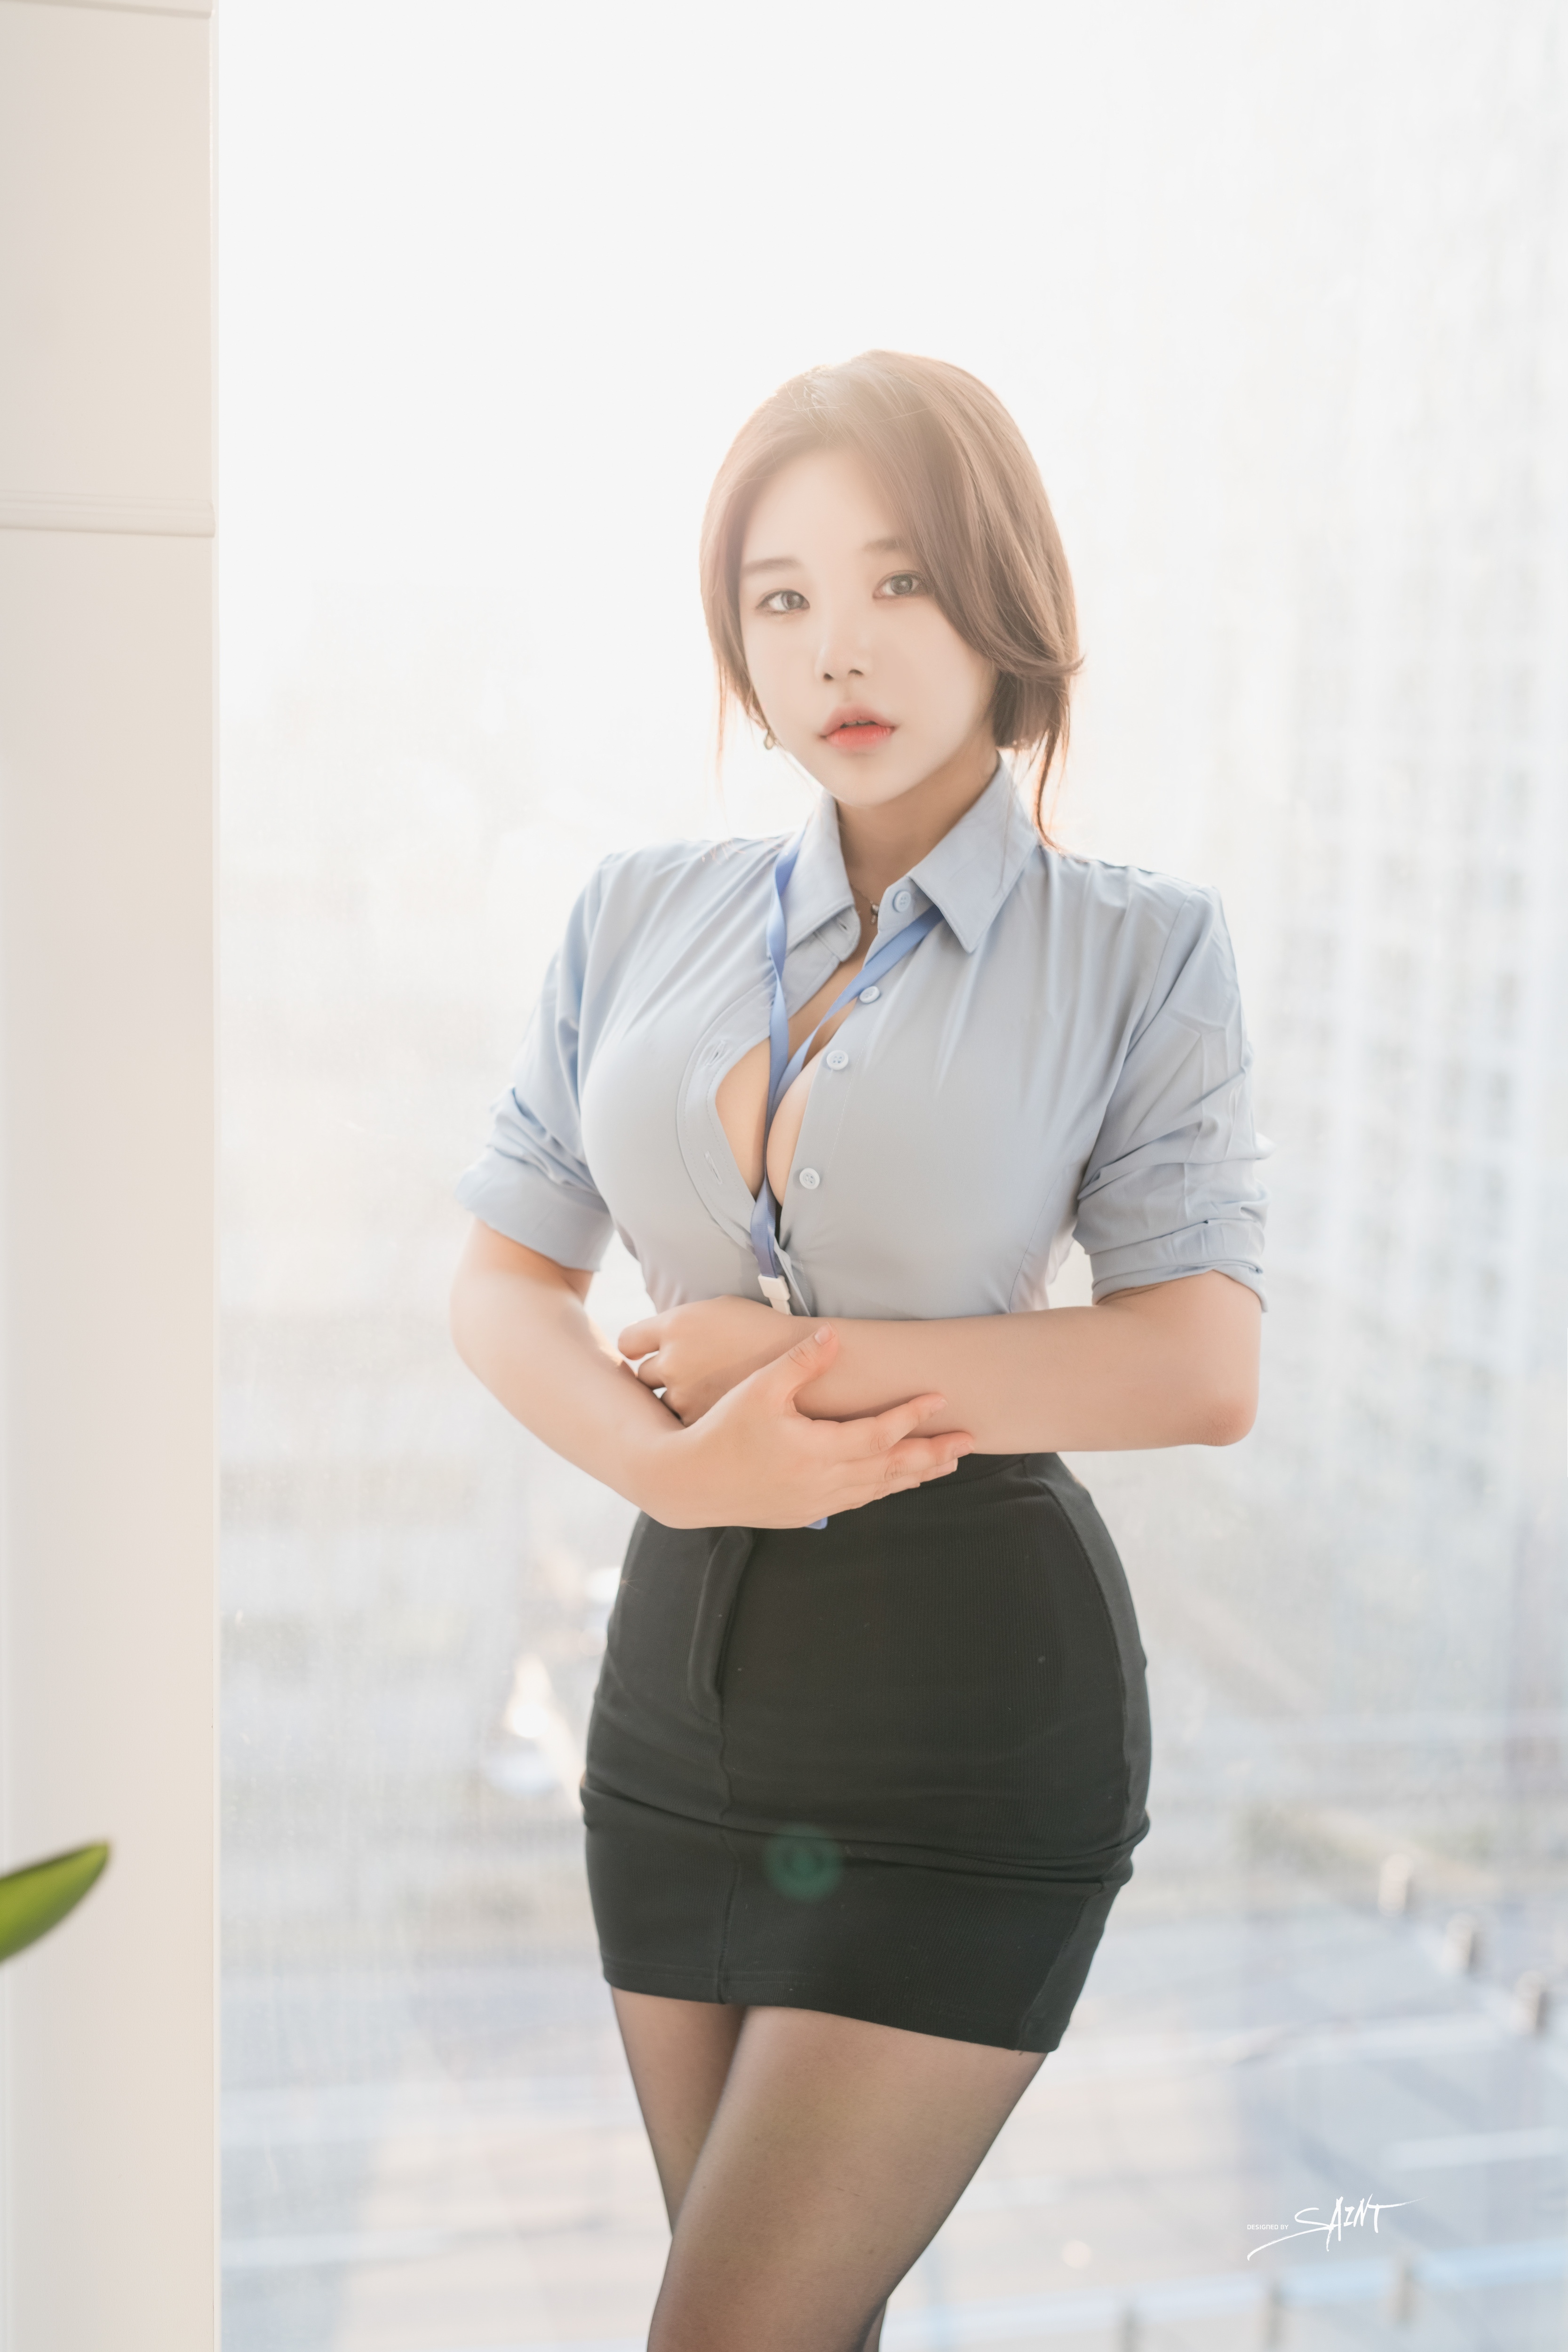 Women Asian Bright Office Girl Lens Flare 3333x5000